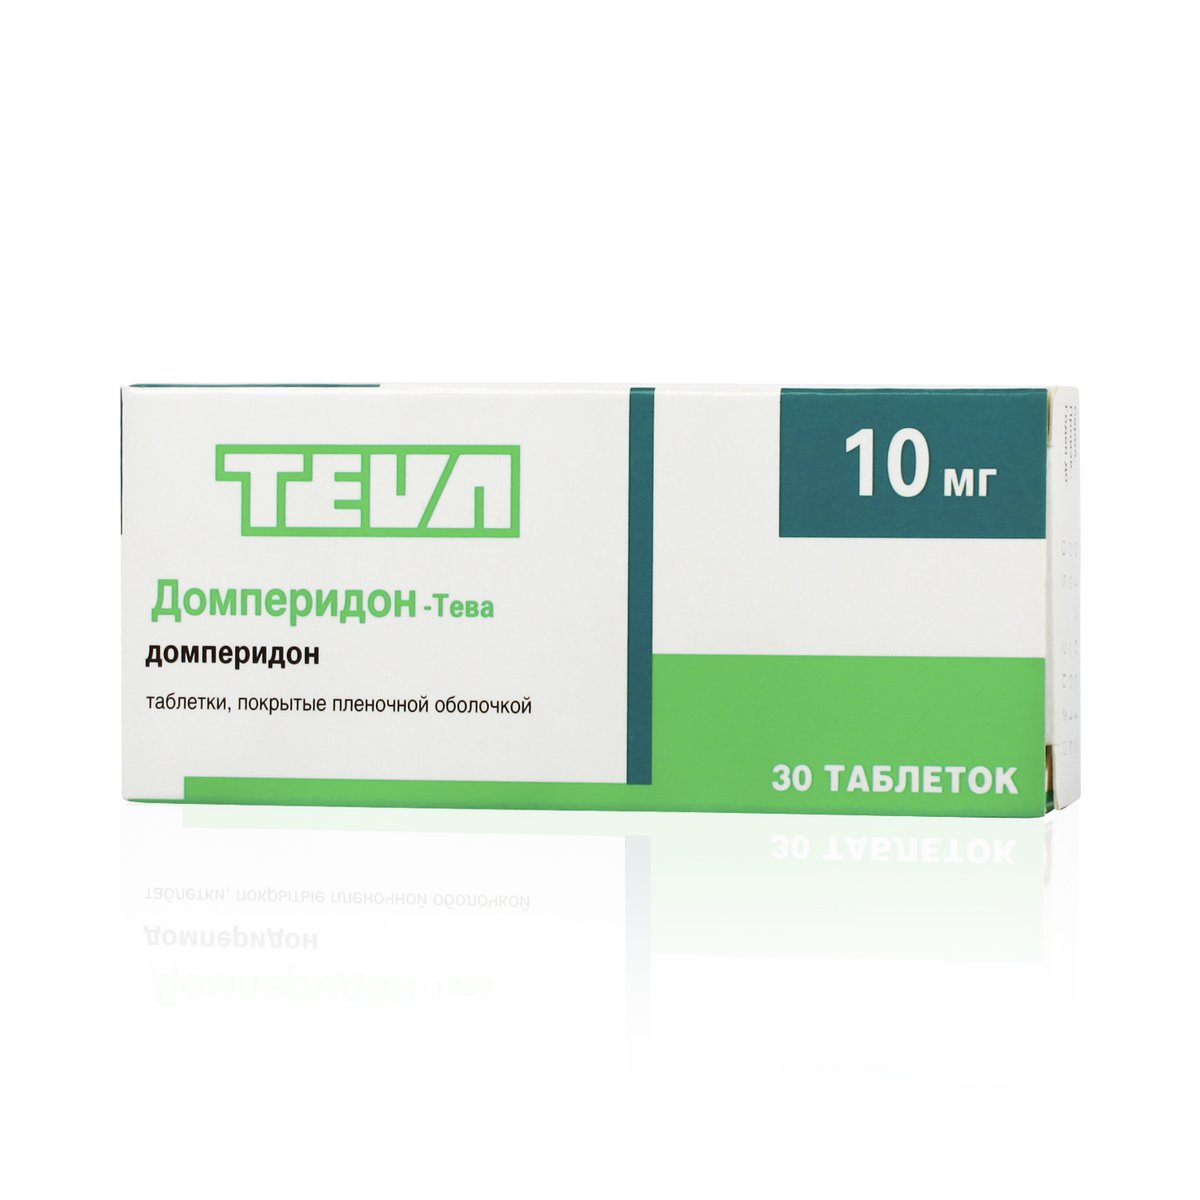 Домперидон-Тева (таблетки, 30 шт, 10 мг) - цена,  онлайн  .